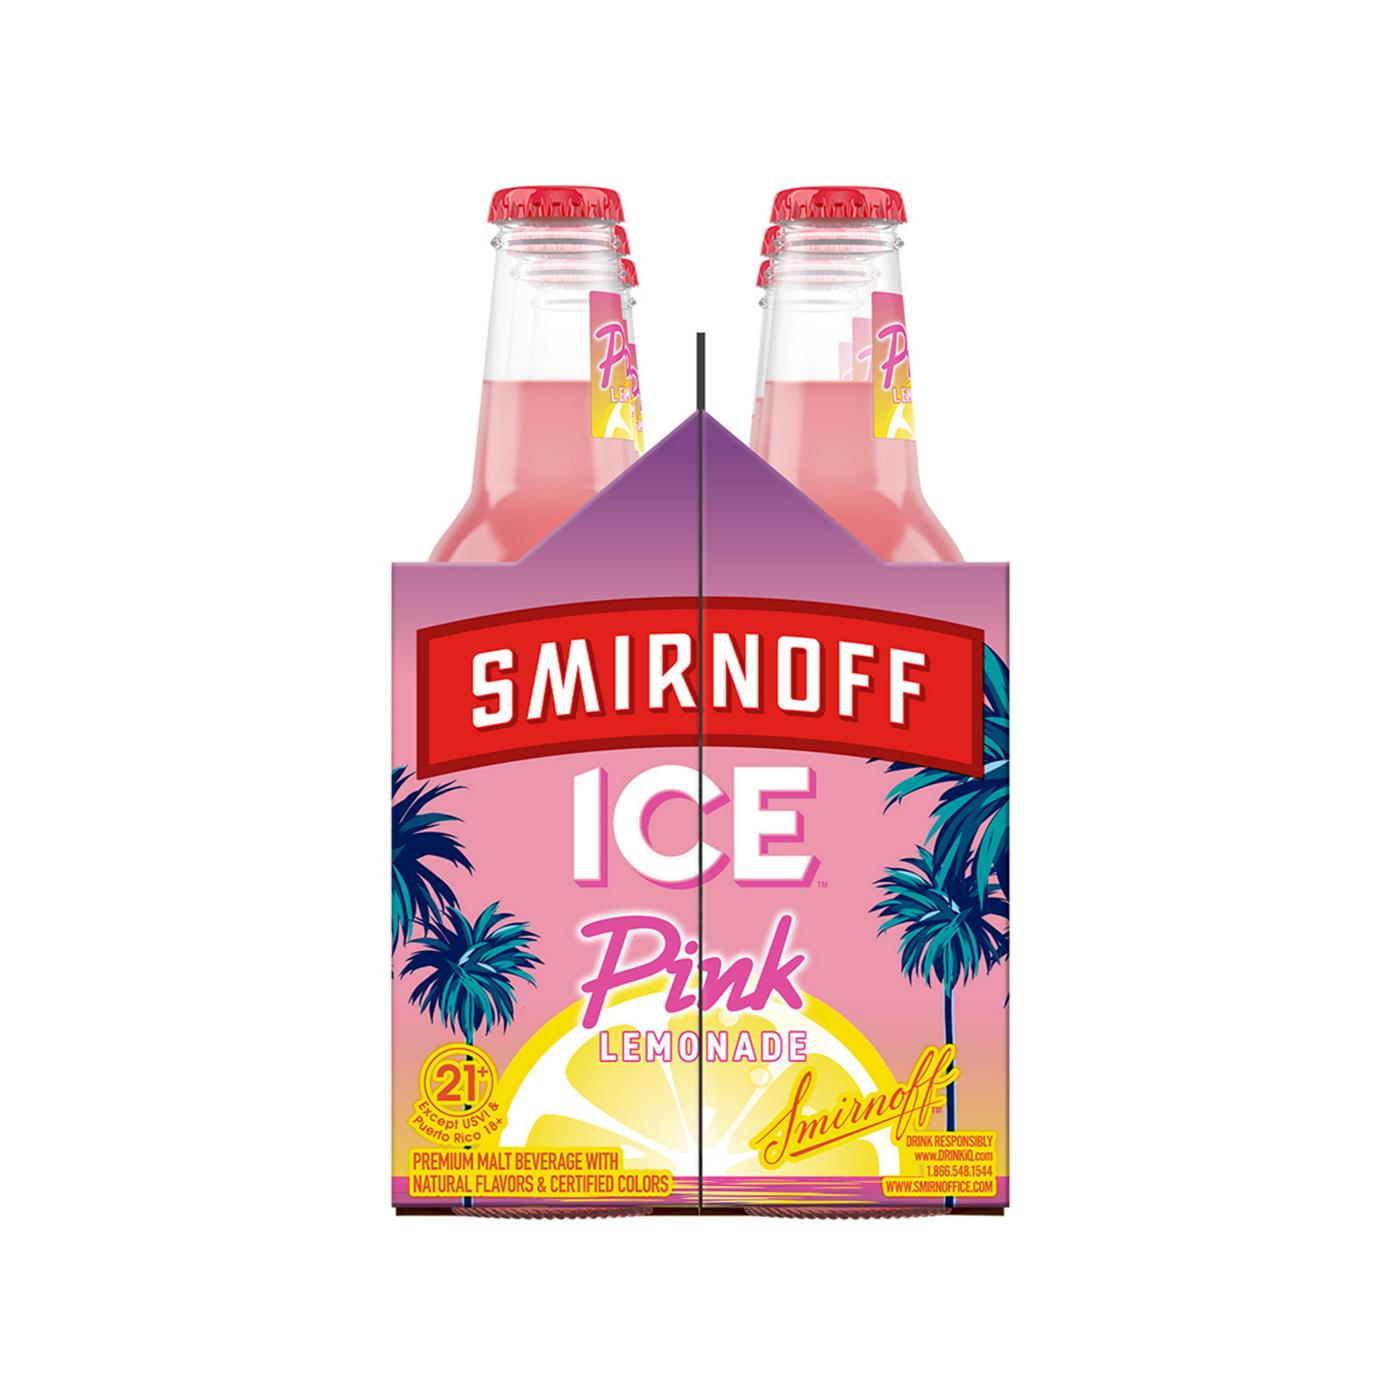 Smirnoff Ice Pink Lemonade; image 5 of 5